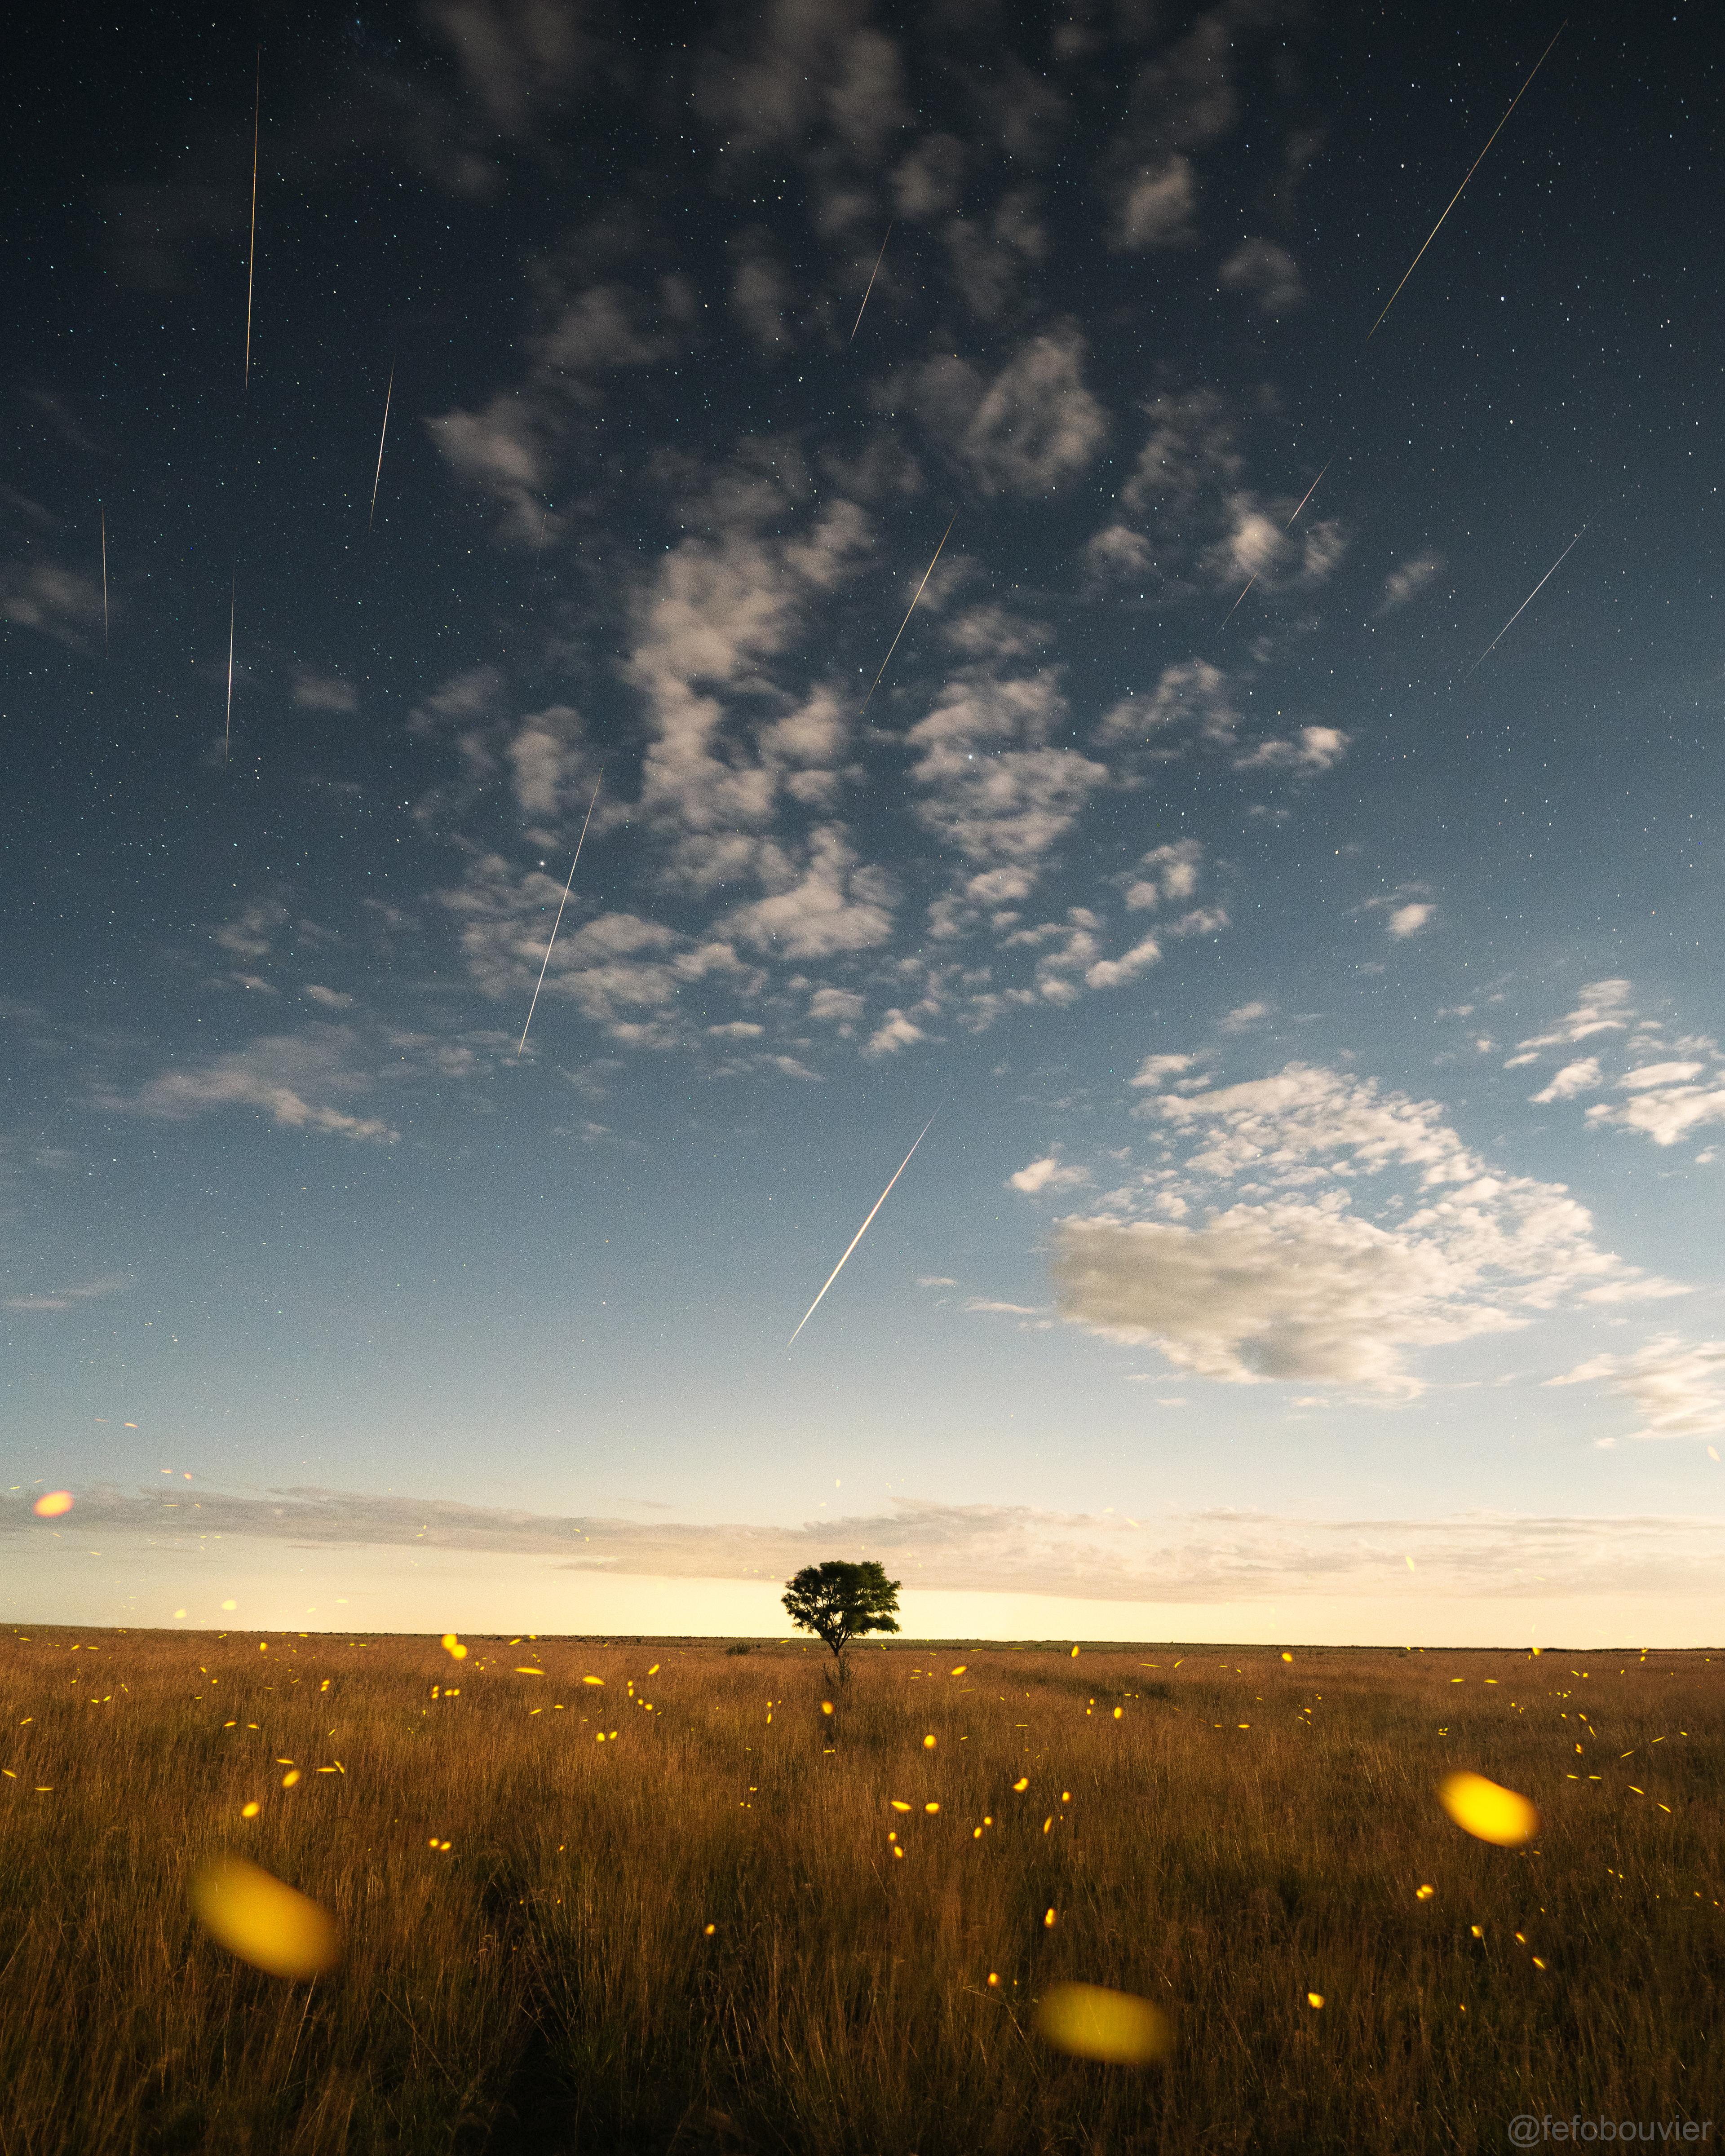 حقلٌ ريفي عشبي تطير فيه اليراعات وتهطل فوقه الشهب في سماءٍ ليلية تظهر فيها النجوم. هناك شجرة في منتصف الصورة، والسماء فيها بعض الغيوم وتزداد سطوعاً باتّجاه الأفق